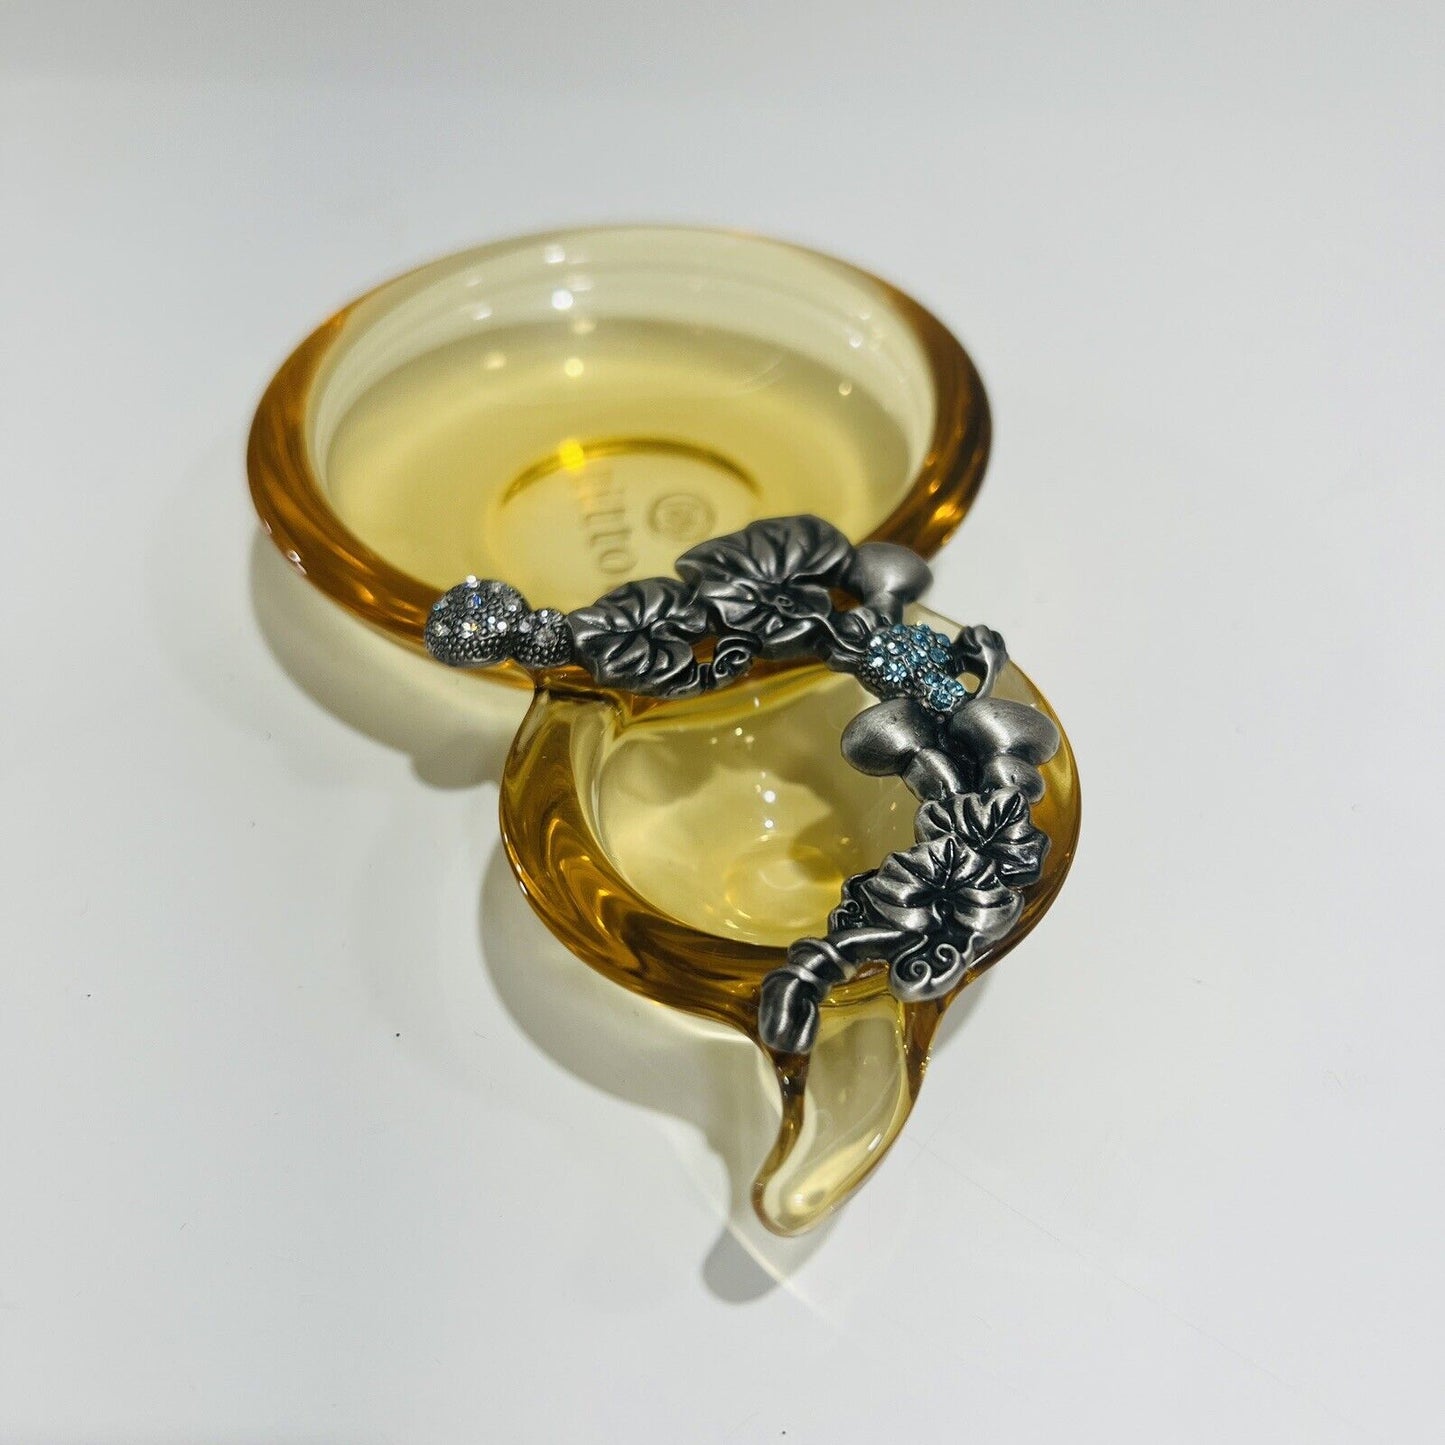 TiTToT Pear Dish Glass Plentiful Harvest Amber Decorative Metal Trinket Taiwan